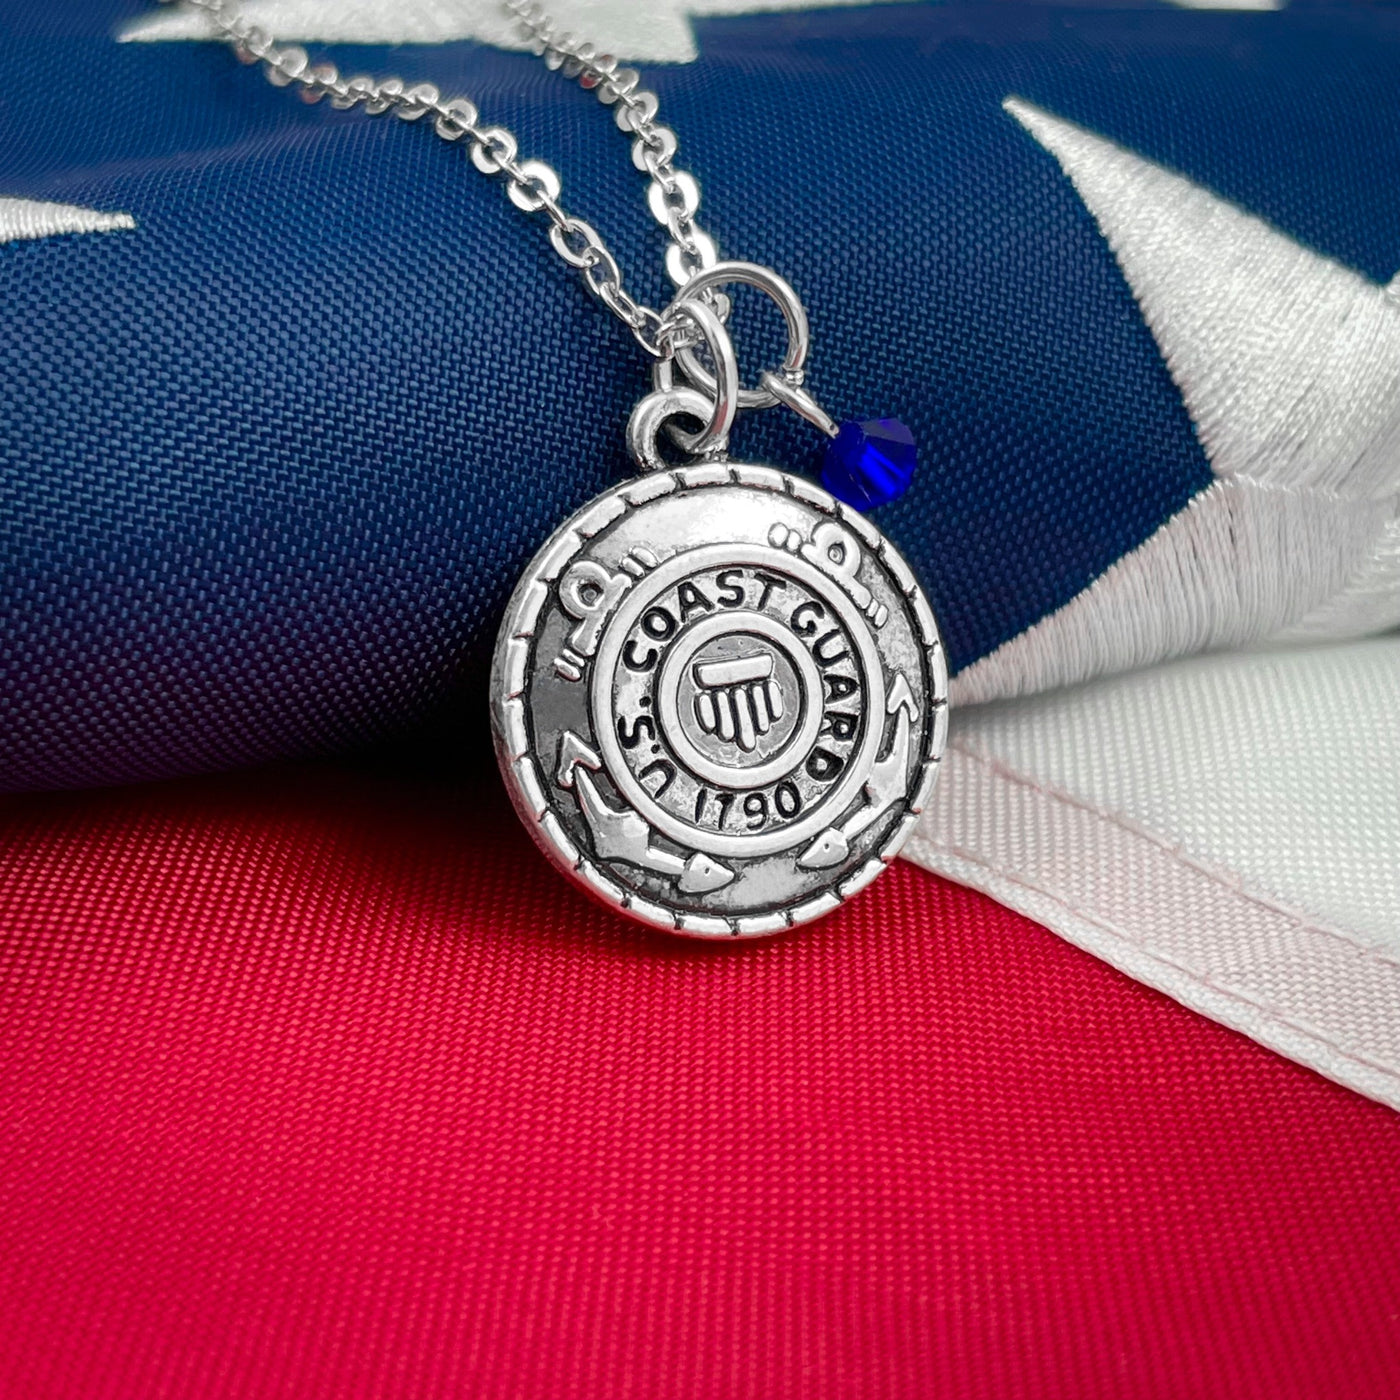 U.S. Coast Guard Necklace